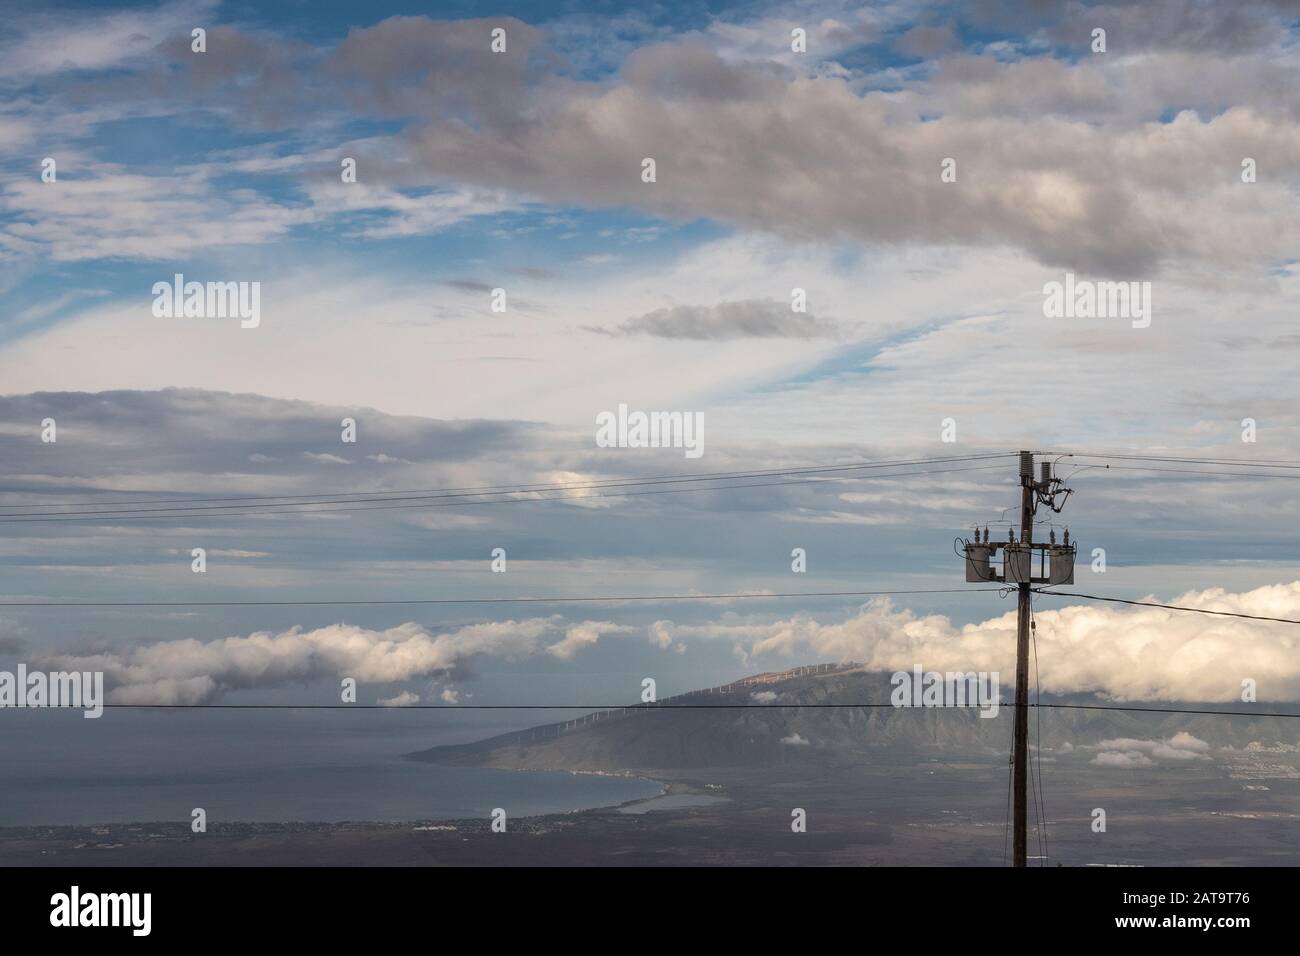 Kahului, Maui, Hawaii, USA. - 13. Januar 2020: Verschiedene Wolkenschichten in blauem Himmel über Land und Ozean mit Bergen am Horizont. Elektrischer Pol Stockfoto